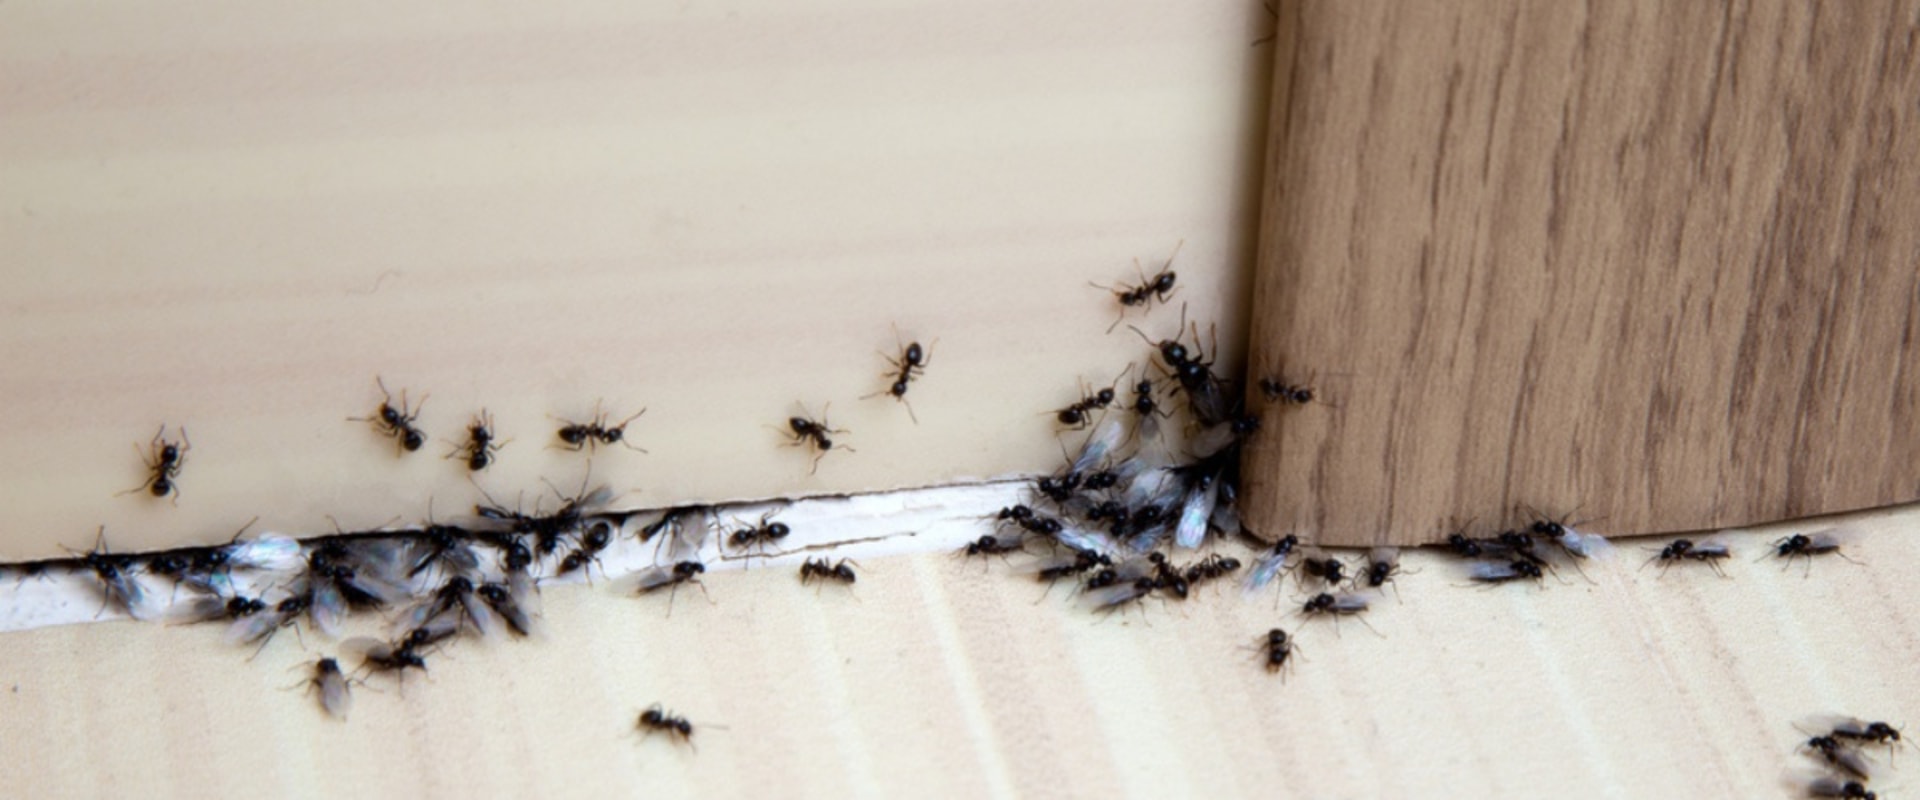 DIY Methods for Home Ant Infestation Treatment